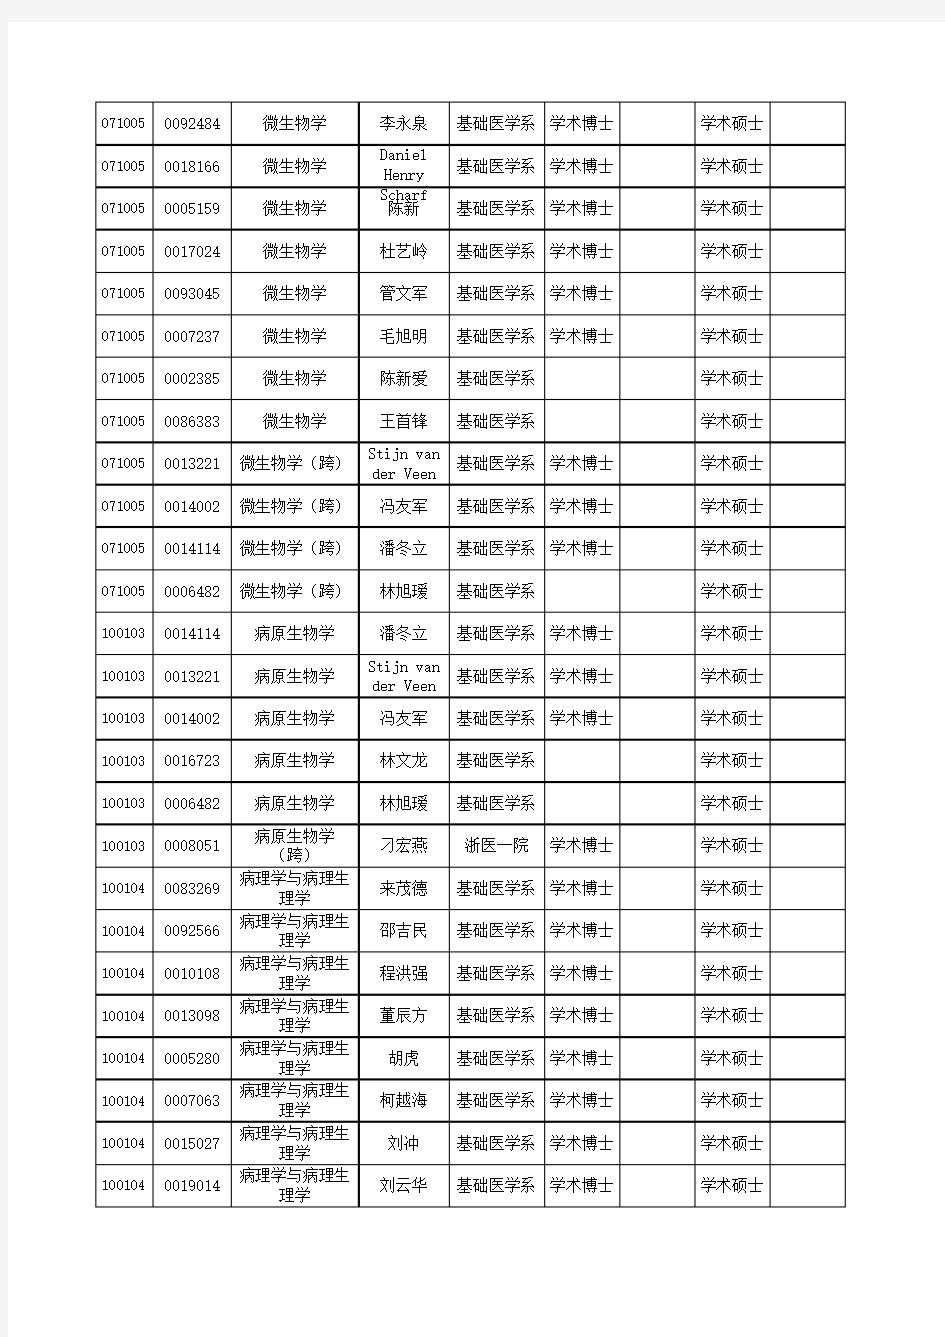 浙江大学医学院2020年研究生导师招生名单